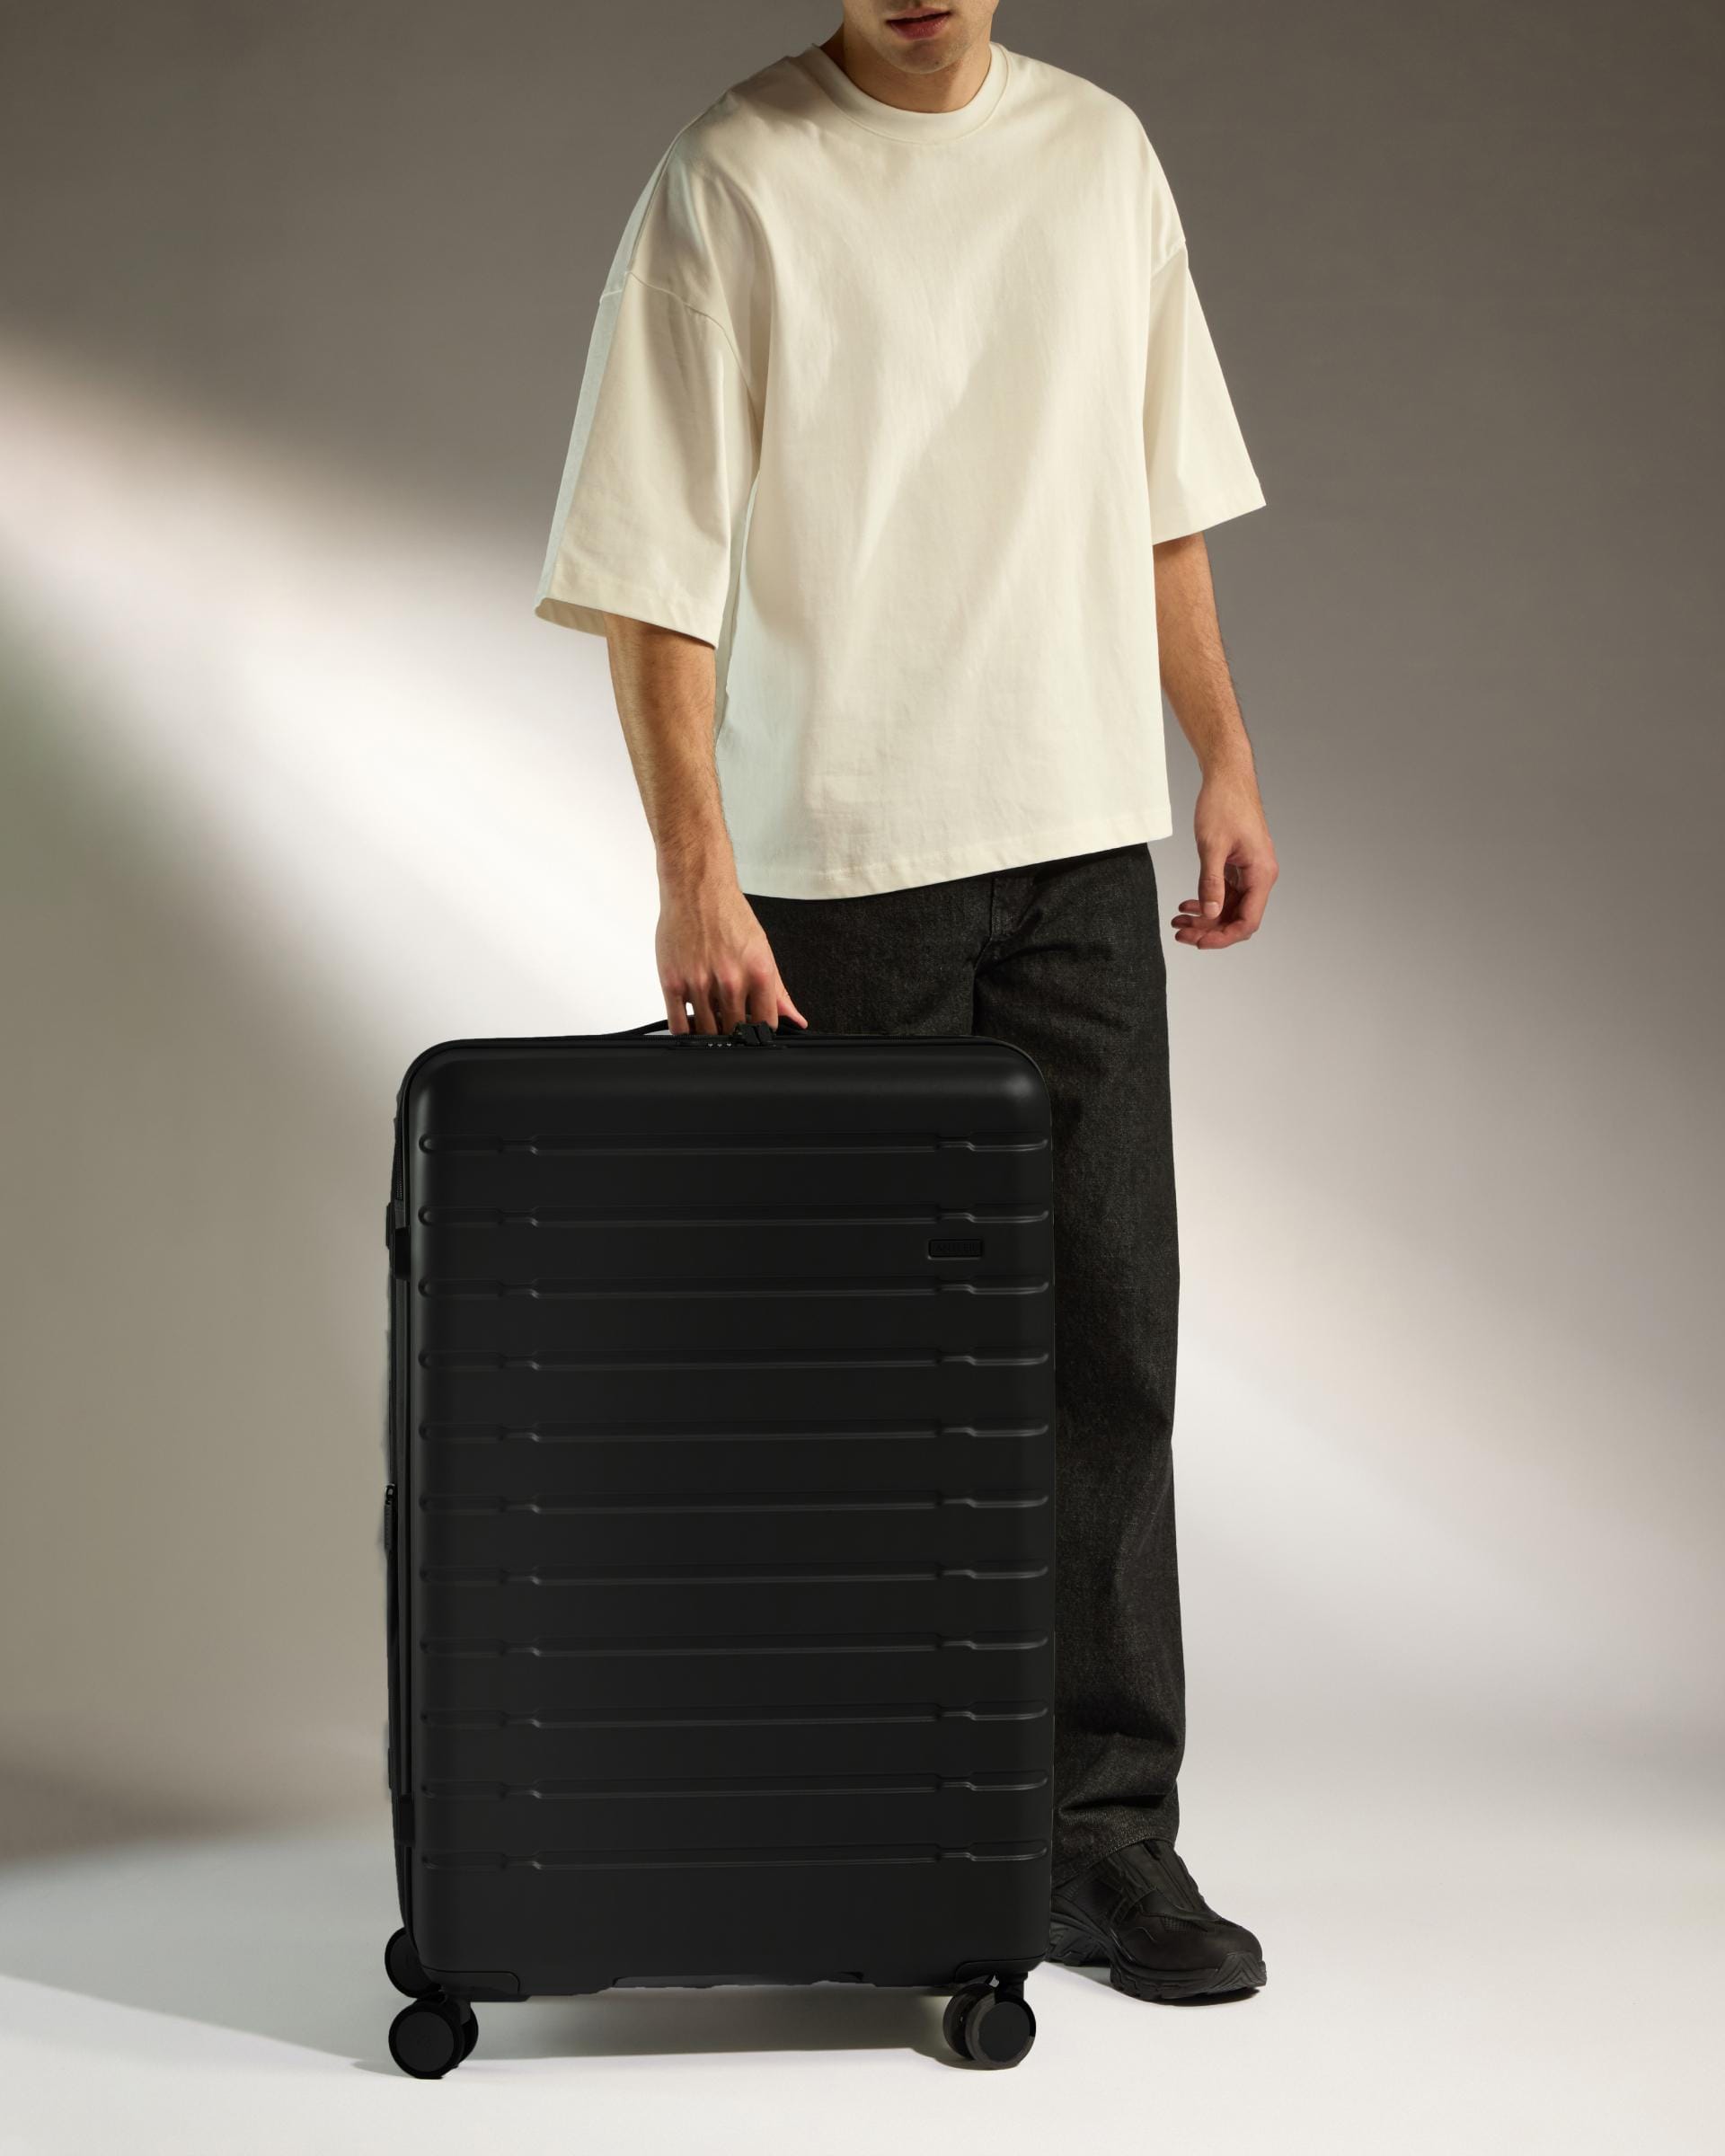 Antler Luggage -  Stamford 2.0 large in midnight black - Hard Suitcases Stamford 2.0 Large Suitcase Black | Hard Luggage | Antler UK